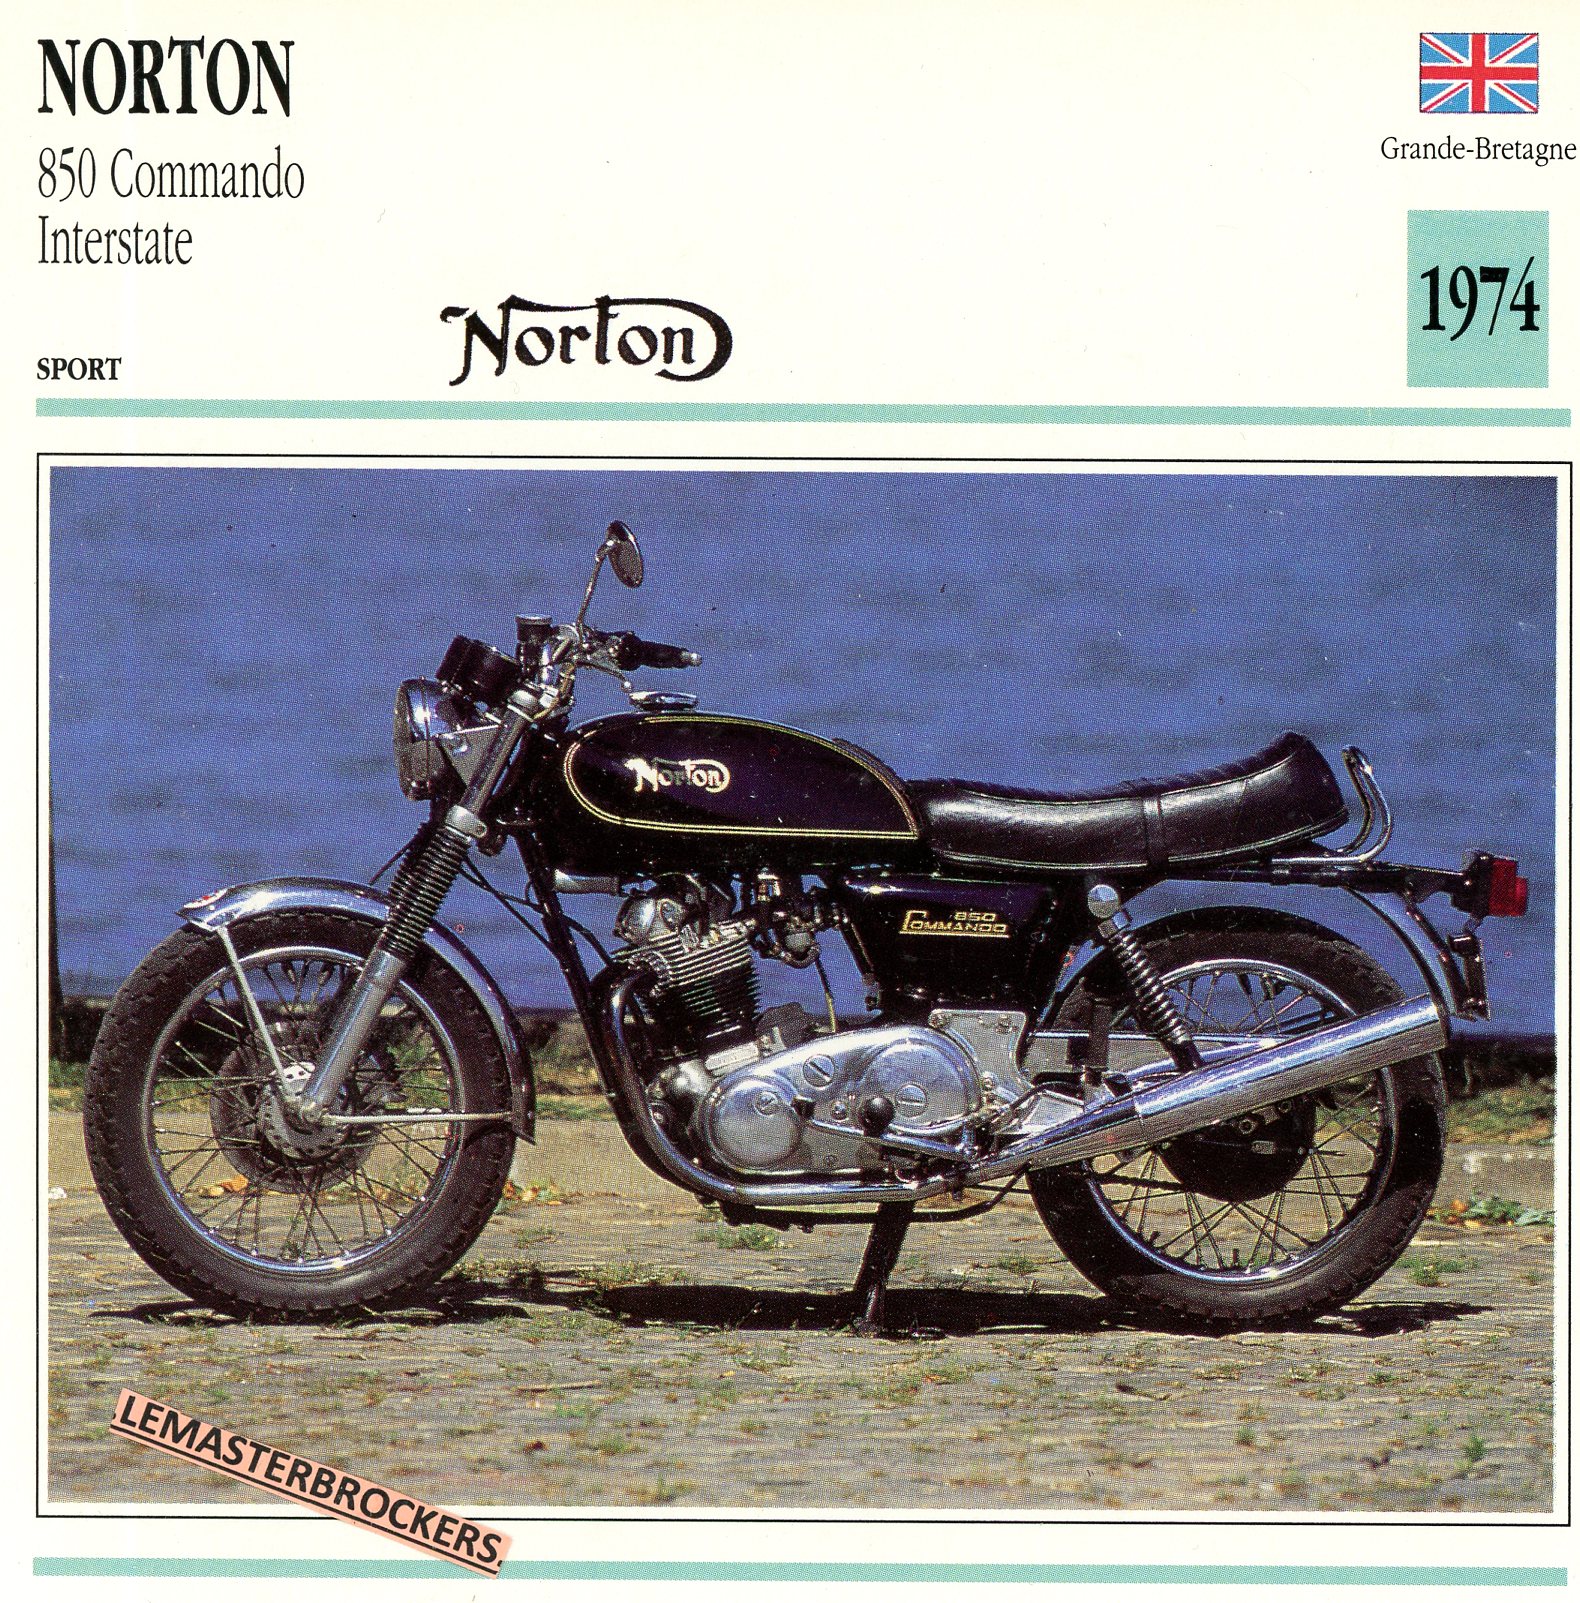 NORTON-COMMANDO-INTERSTATE-1947-FICHE-MOTO-ATLAS-lemasterbrockers-CARD-MOTORCYCLE